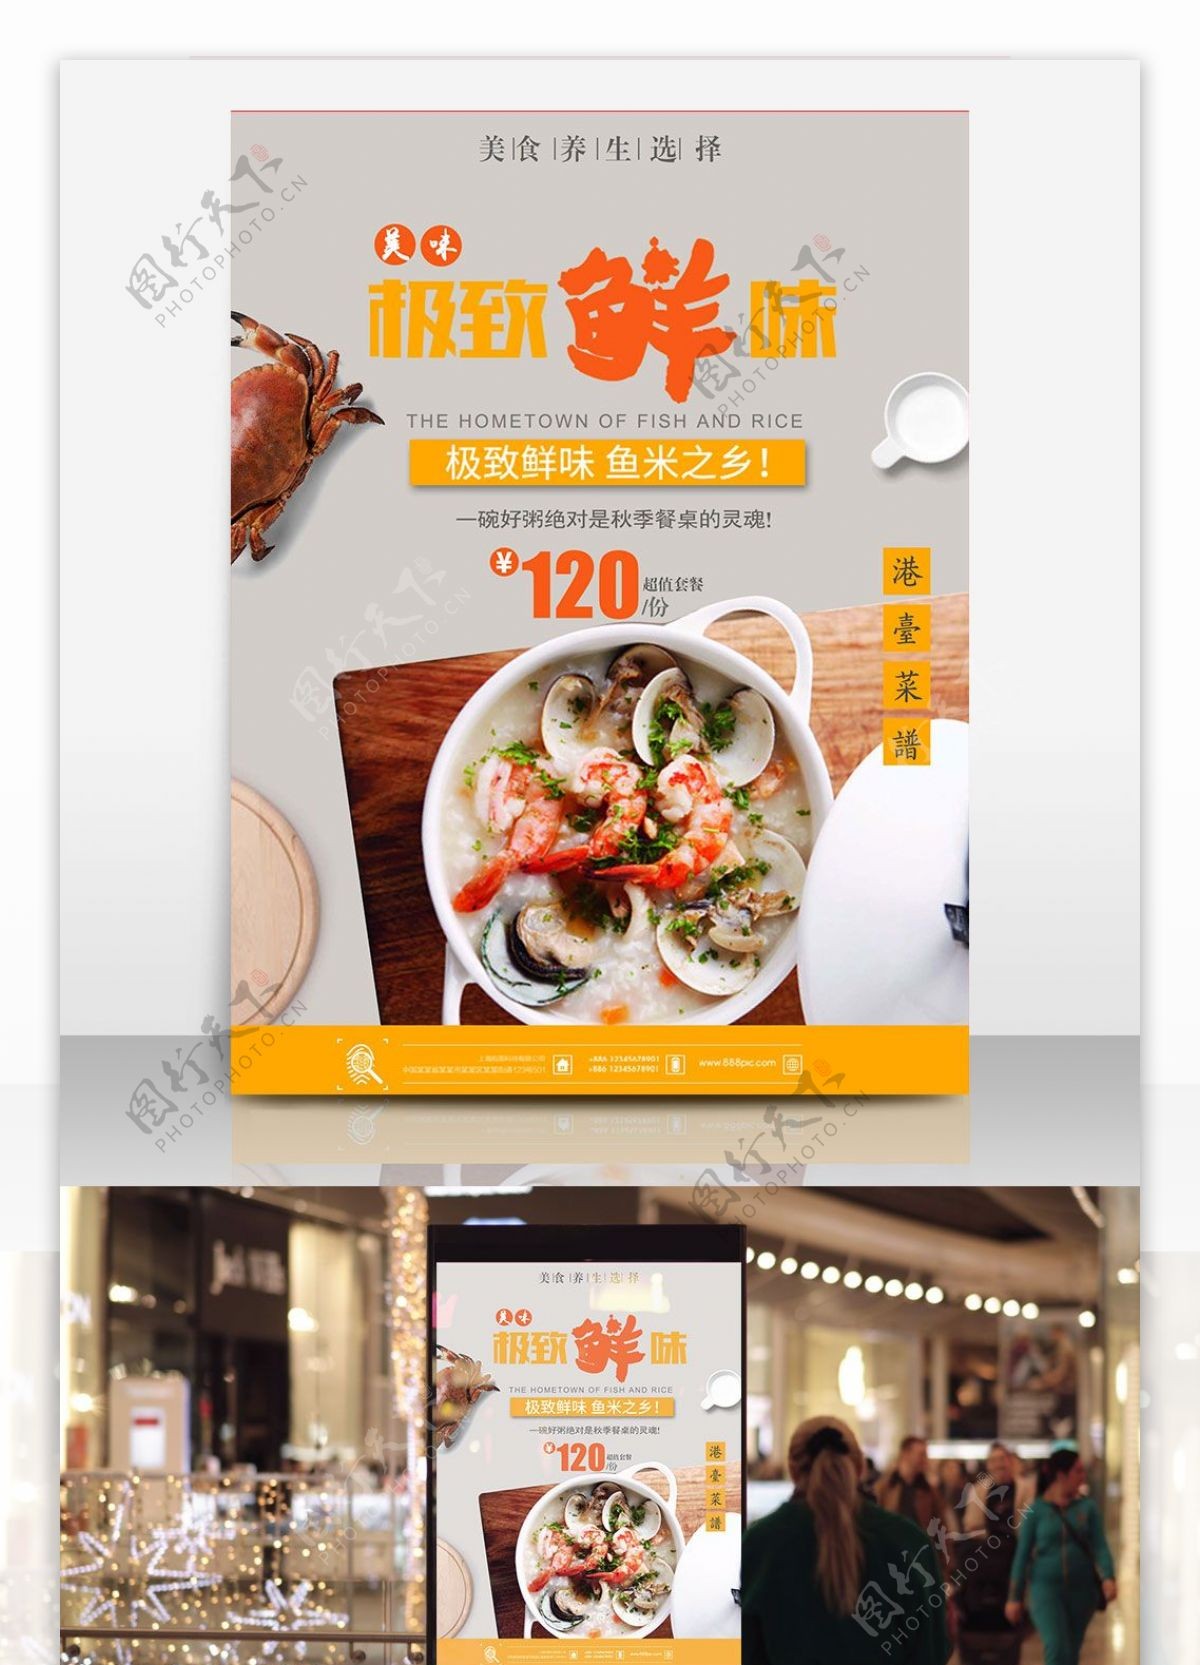 美食海鲜粥简约商业海报设计模板